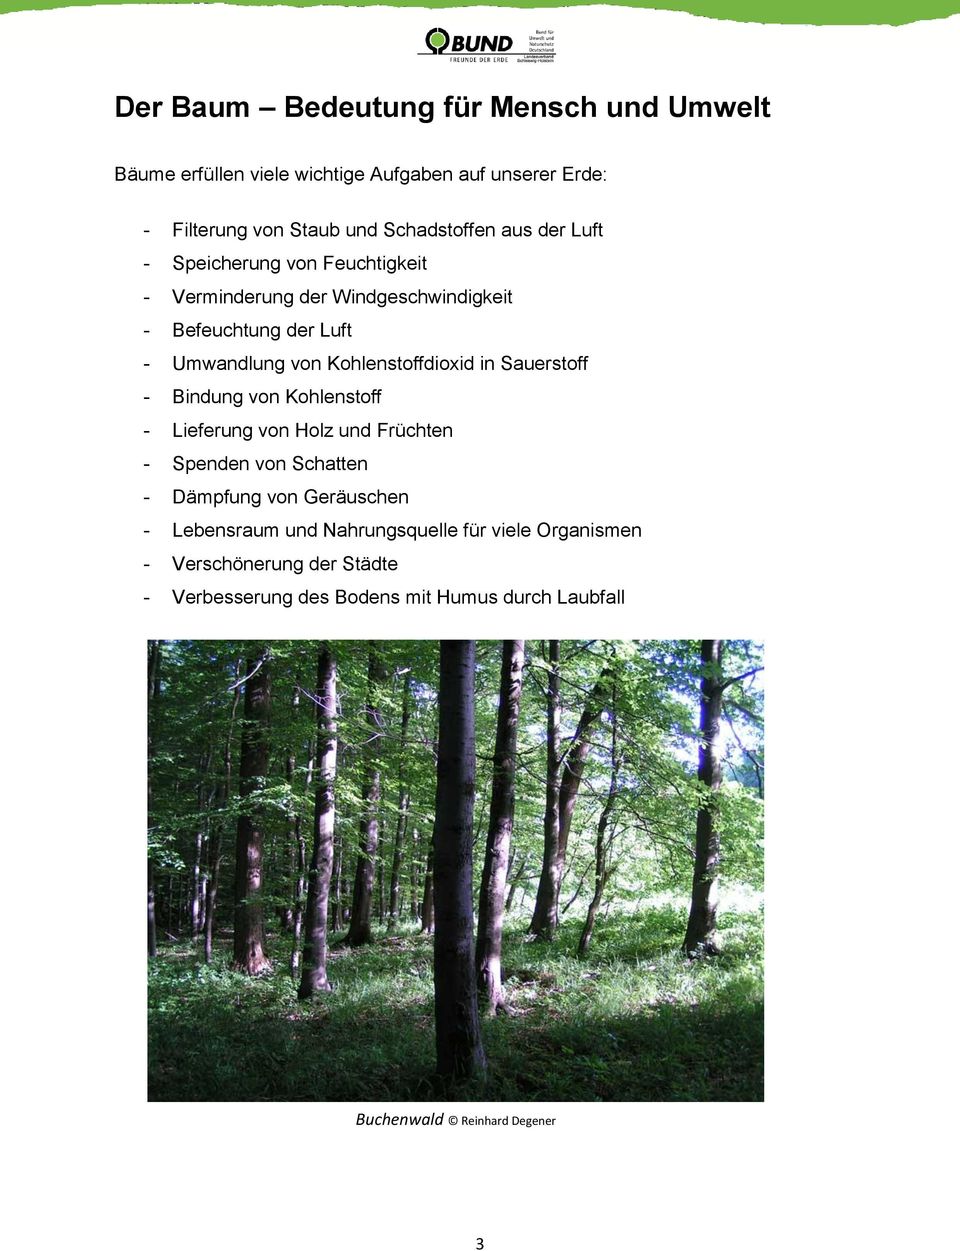 Sauerstoff - Bindung von Kohlenstoff - Lieferung von Holz und Früchten - Spenden von Schatten - Dämpfung von Geräuschen - Lebensraum und